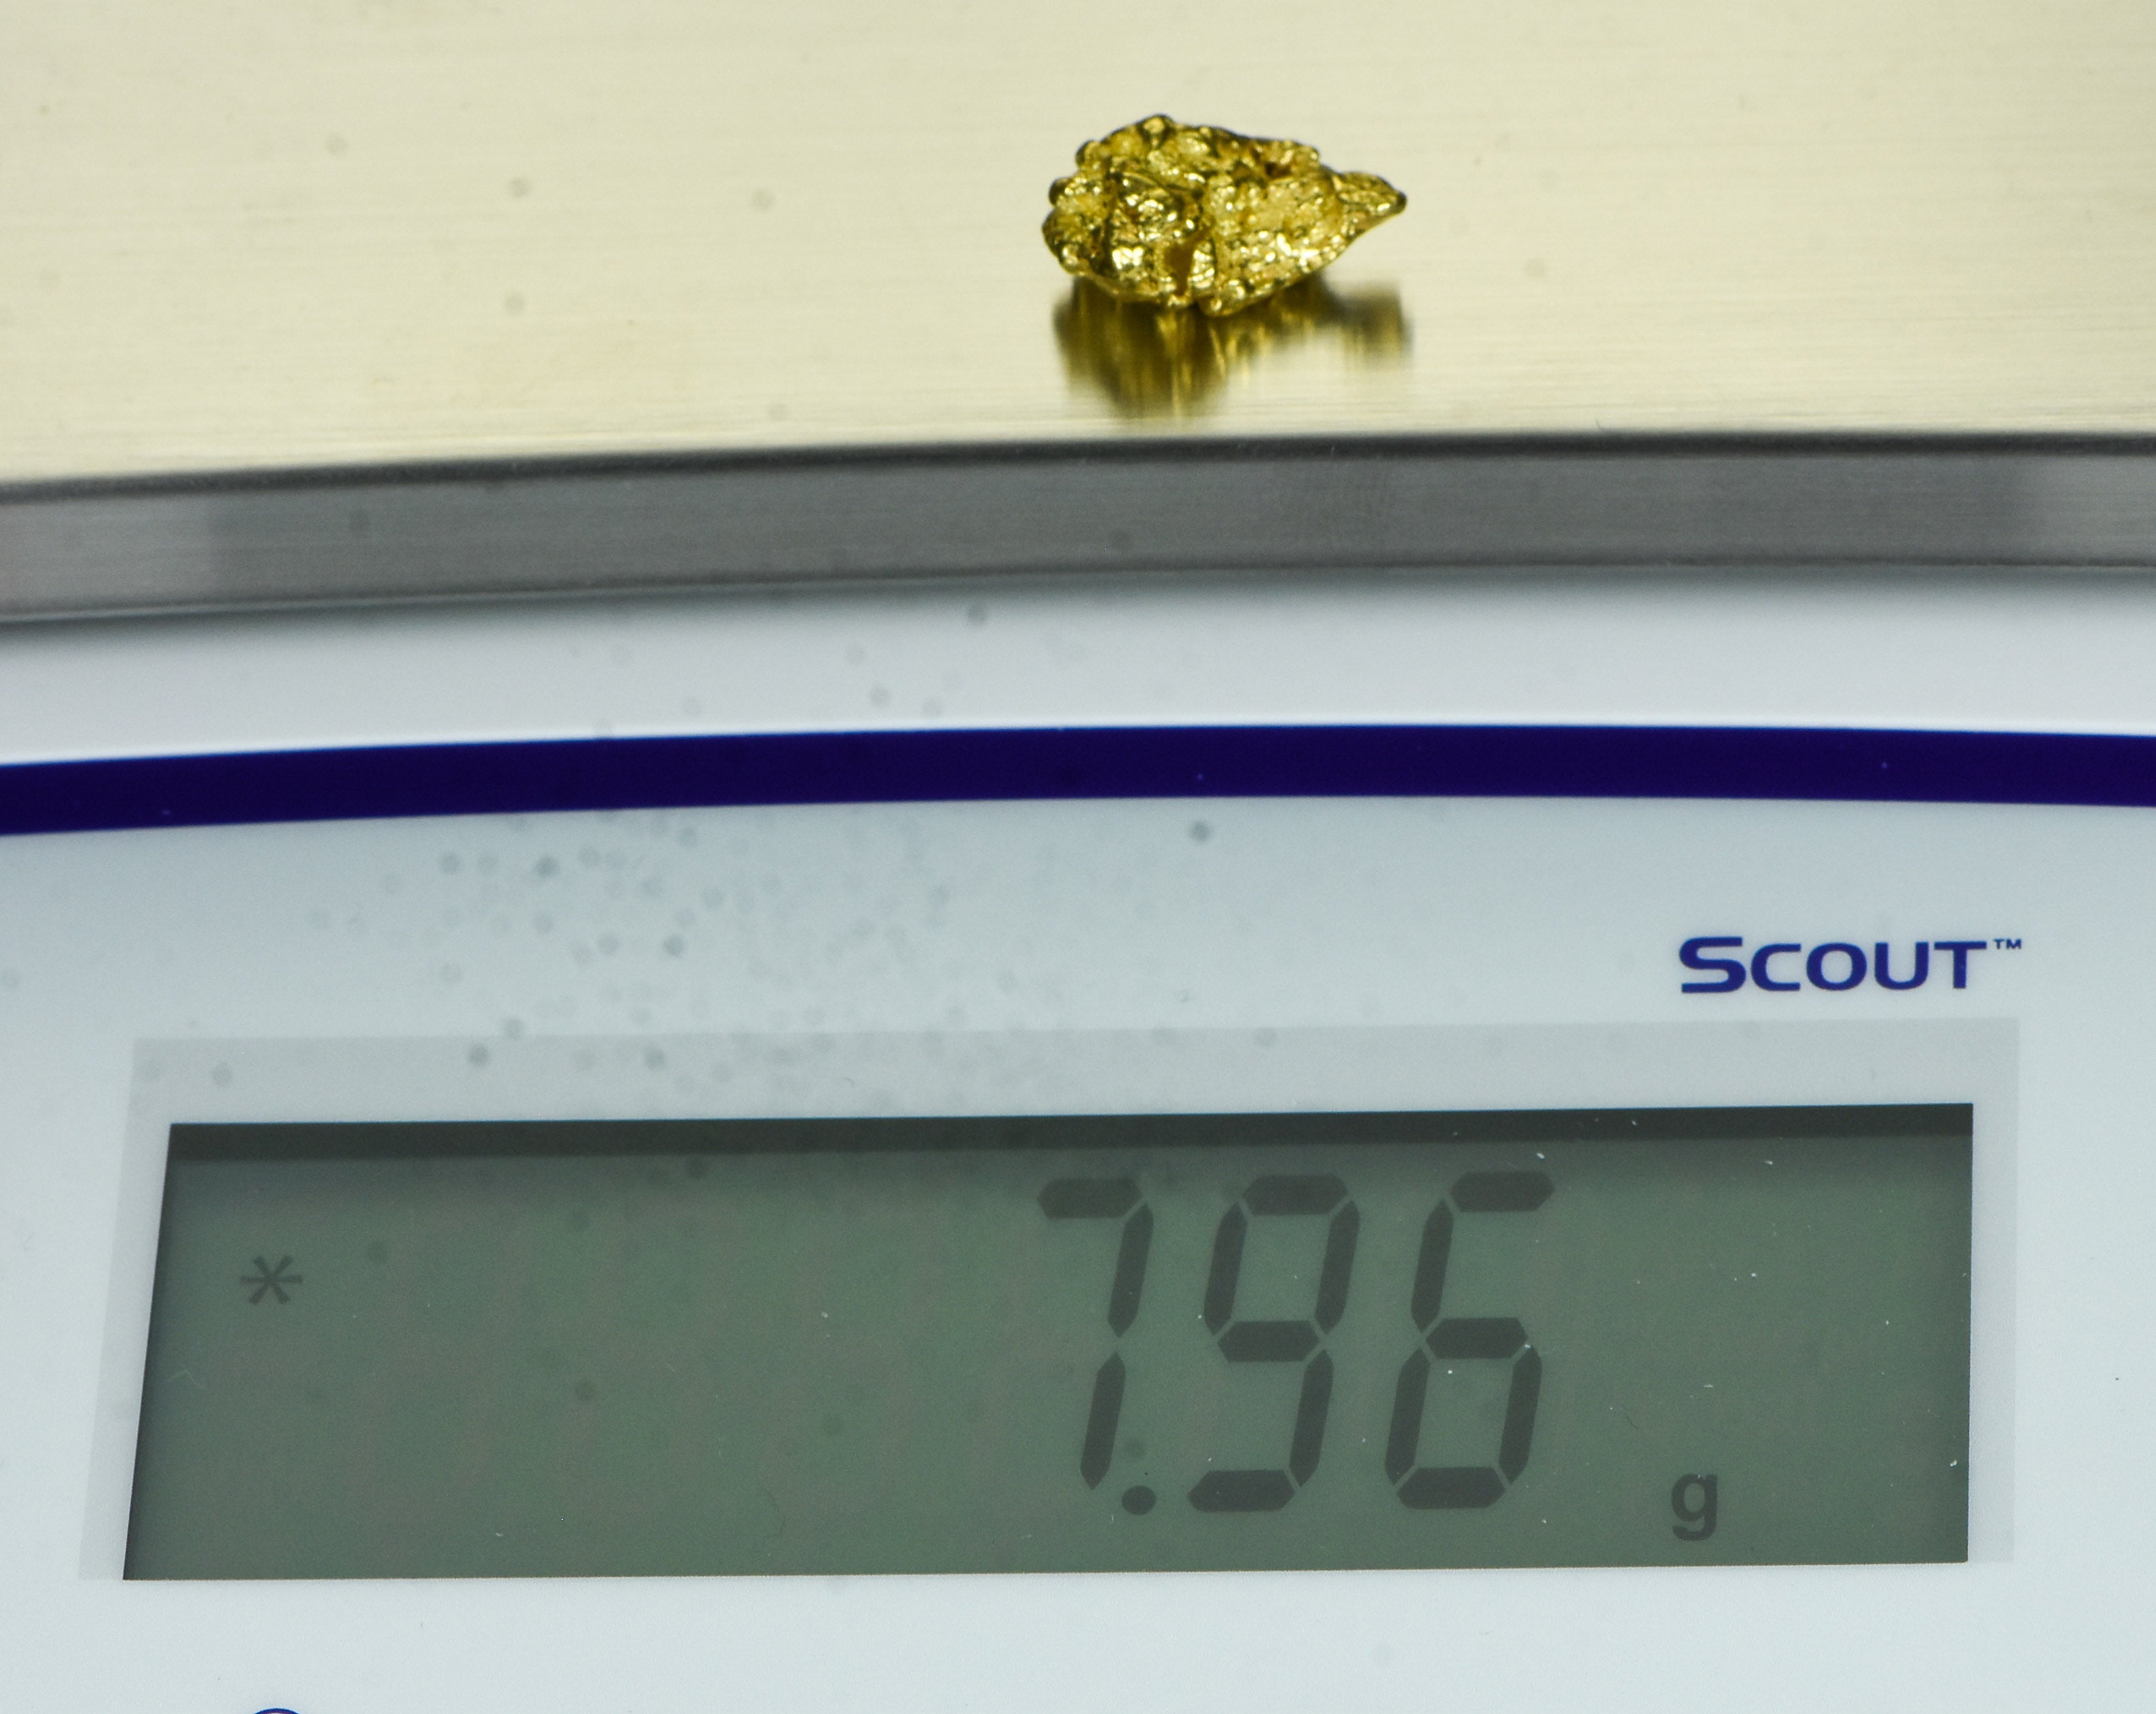 #384 Alaskan BC Natural Gold Nugget 7.96 Grams Genuine